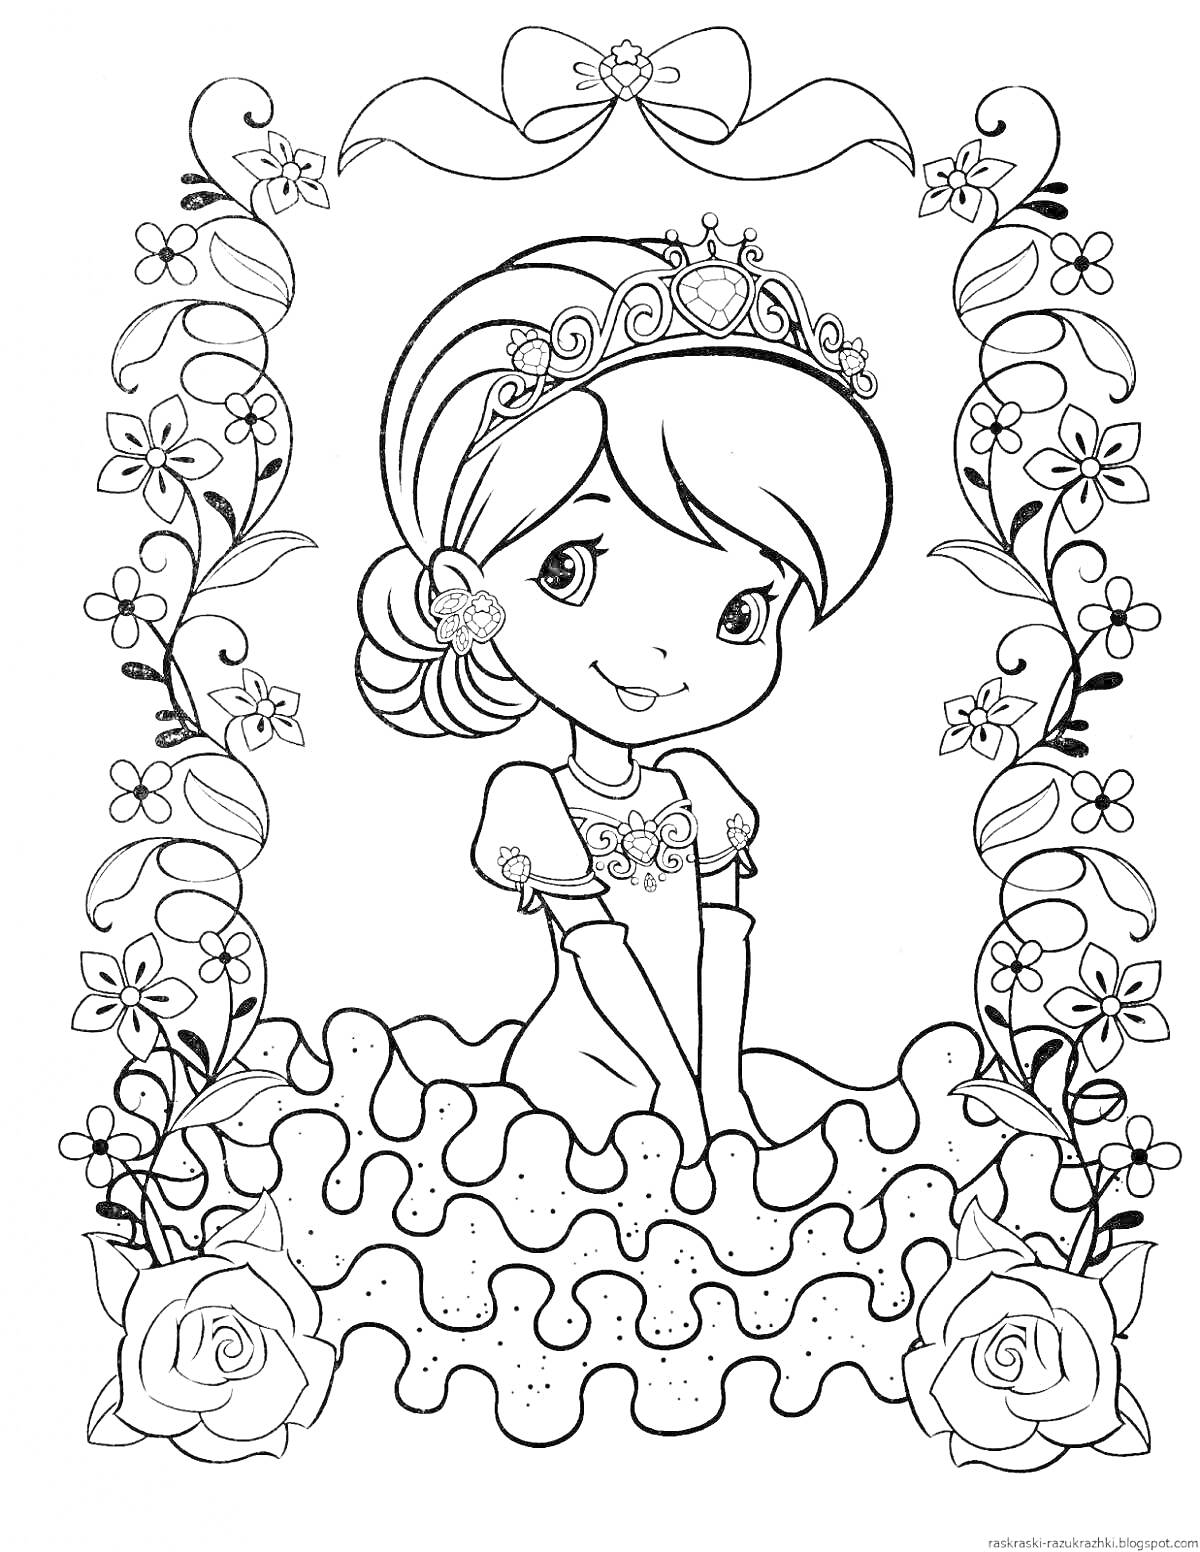 Раскраска Девочка-принцесса на фоне цветов с короной на голове